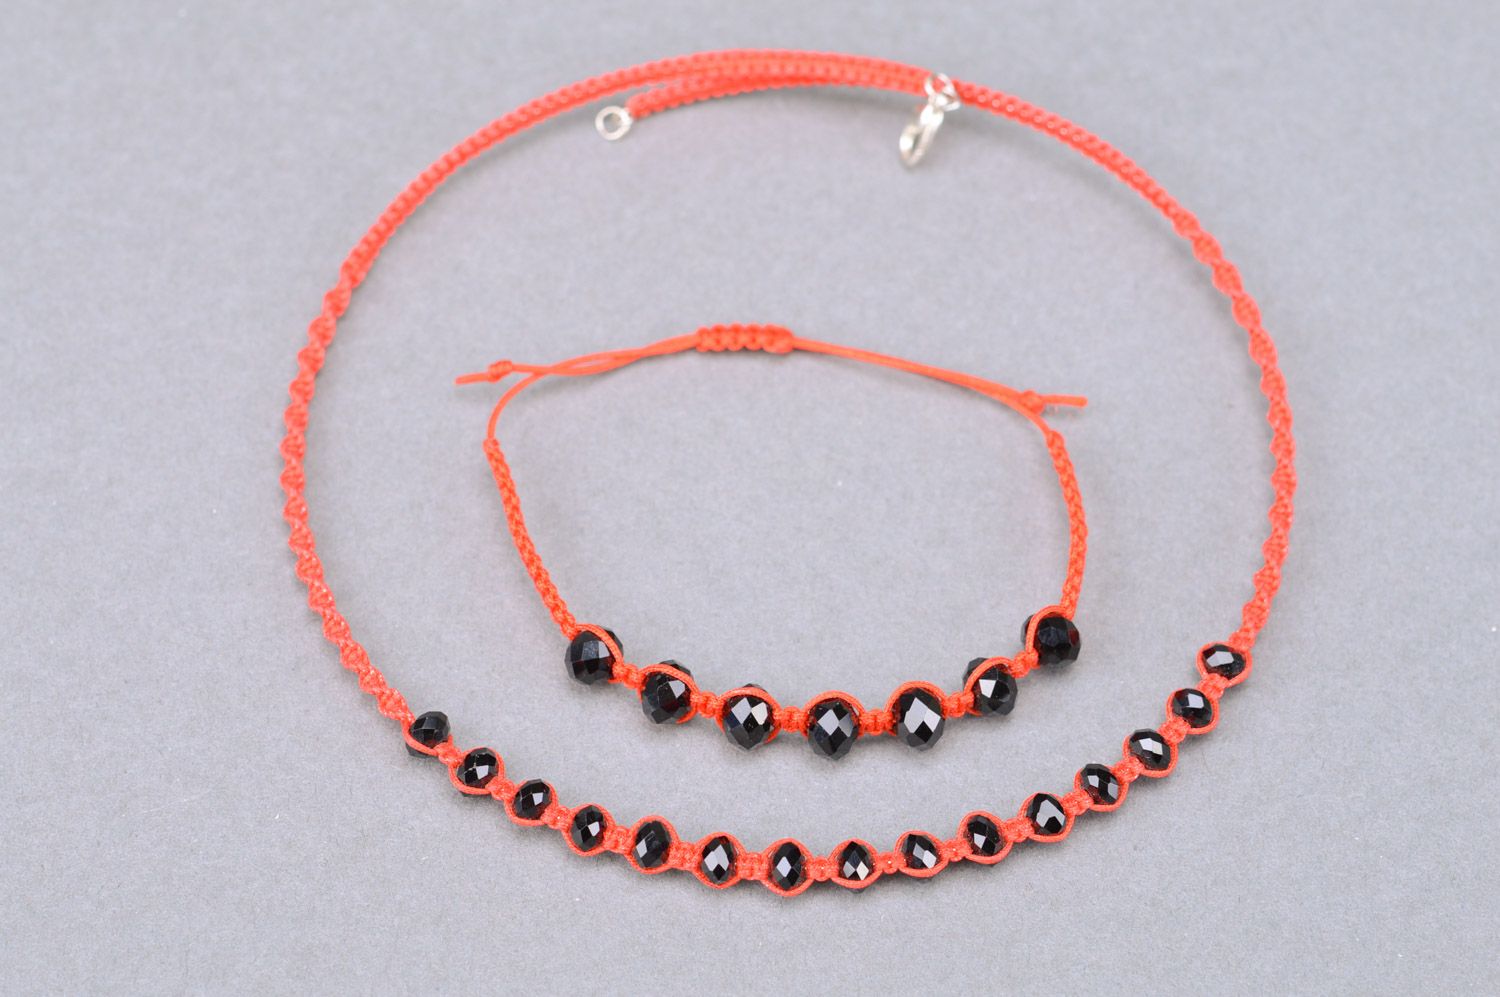 Collier et bracelet faits main rouges tressés de fils et perles noires fantaisie photo 2